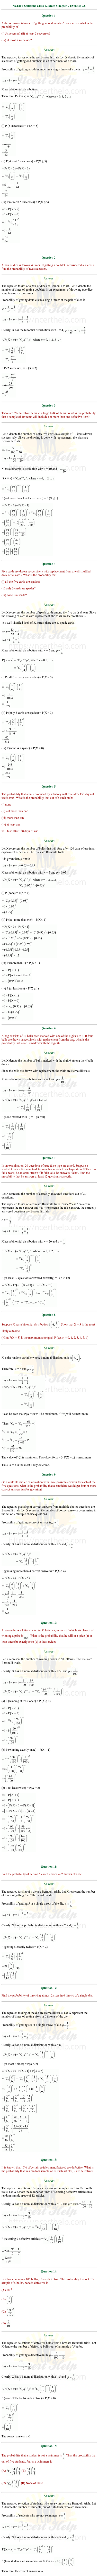 ex.13.5 Class 12 Math Chapter 13 ncert solutions